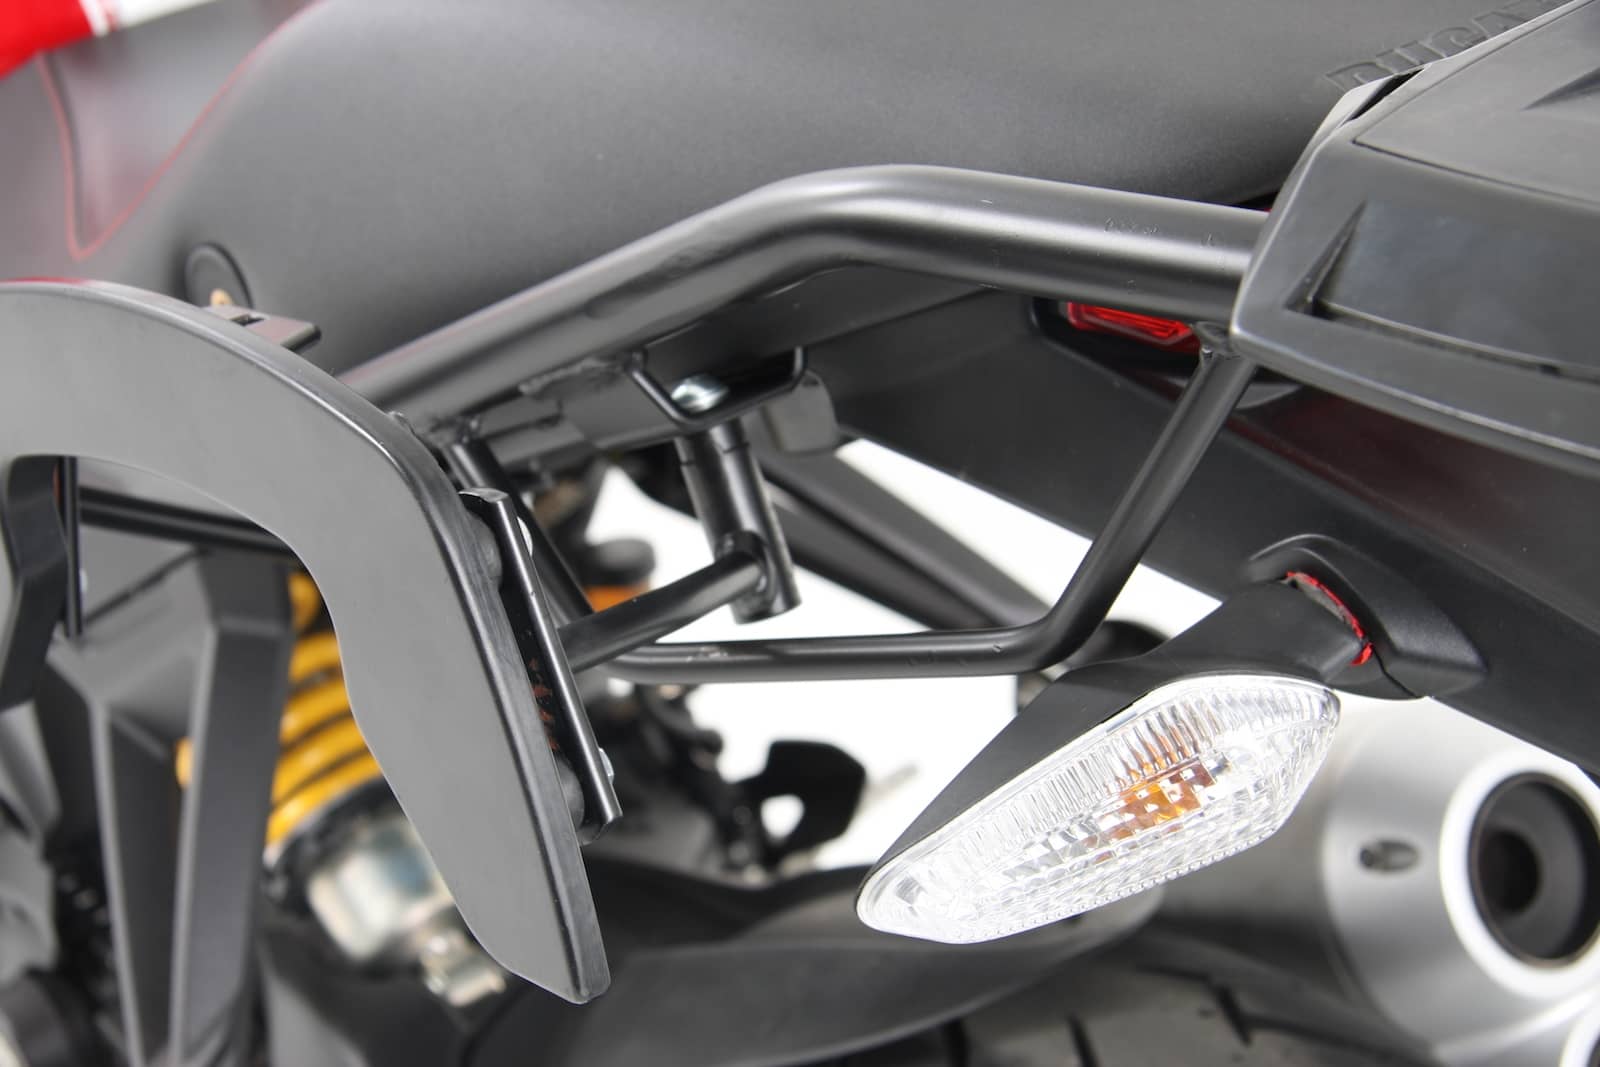 Alurack top case carrier black for Ducati Monster 1100 evo (2011-2013)